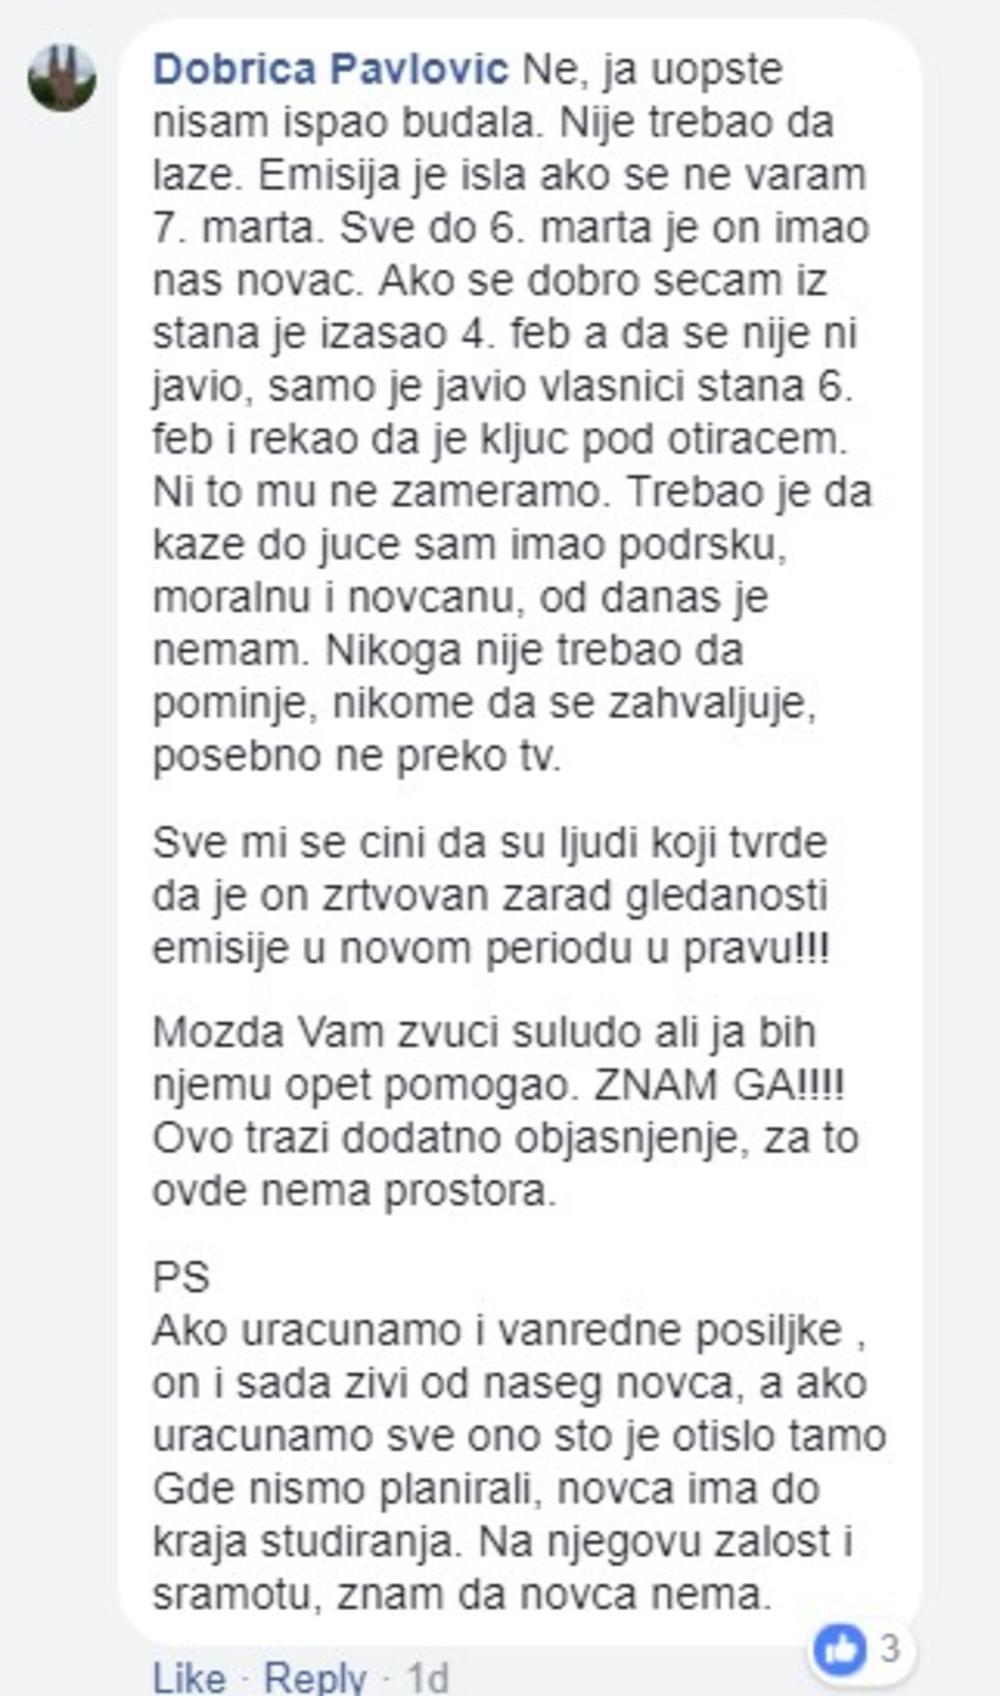 Poruke na Facebook-u Dobrica Pavlović